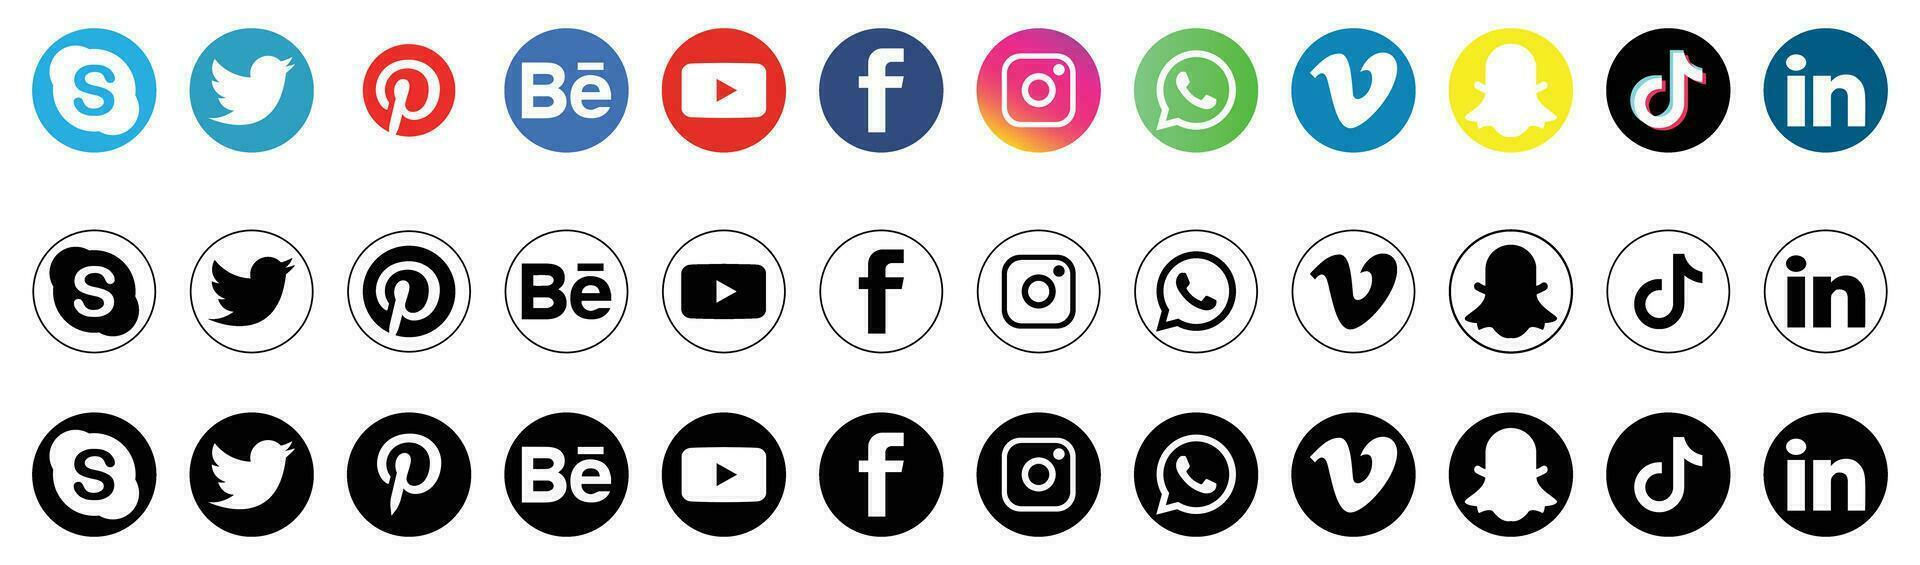 social medios de comunicación logo íconos aislado en blanco vector